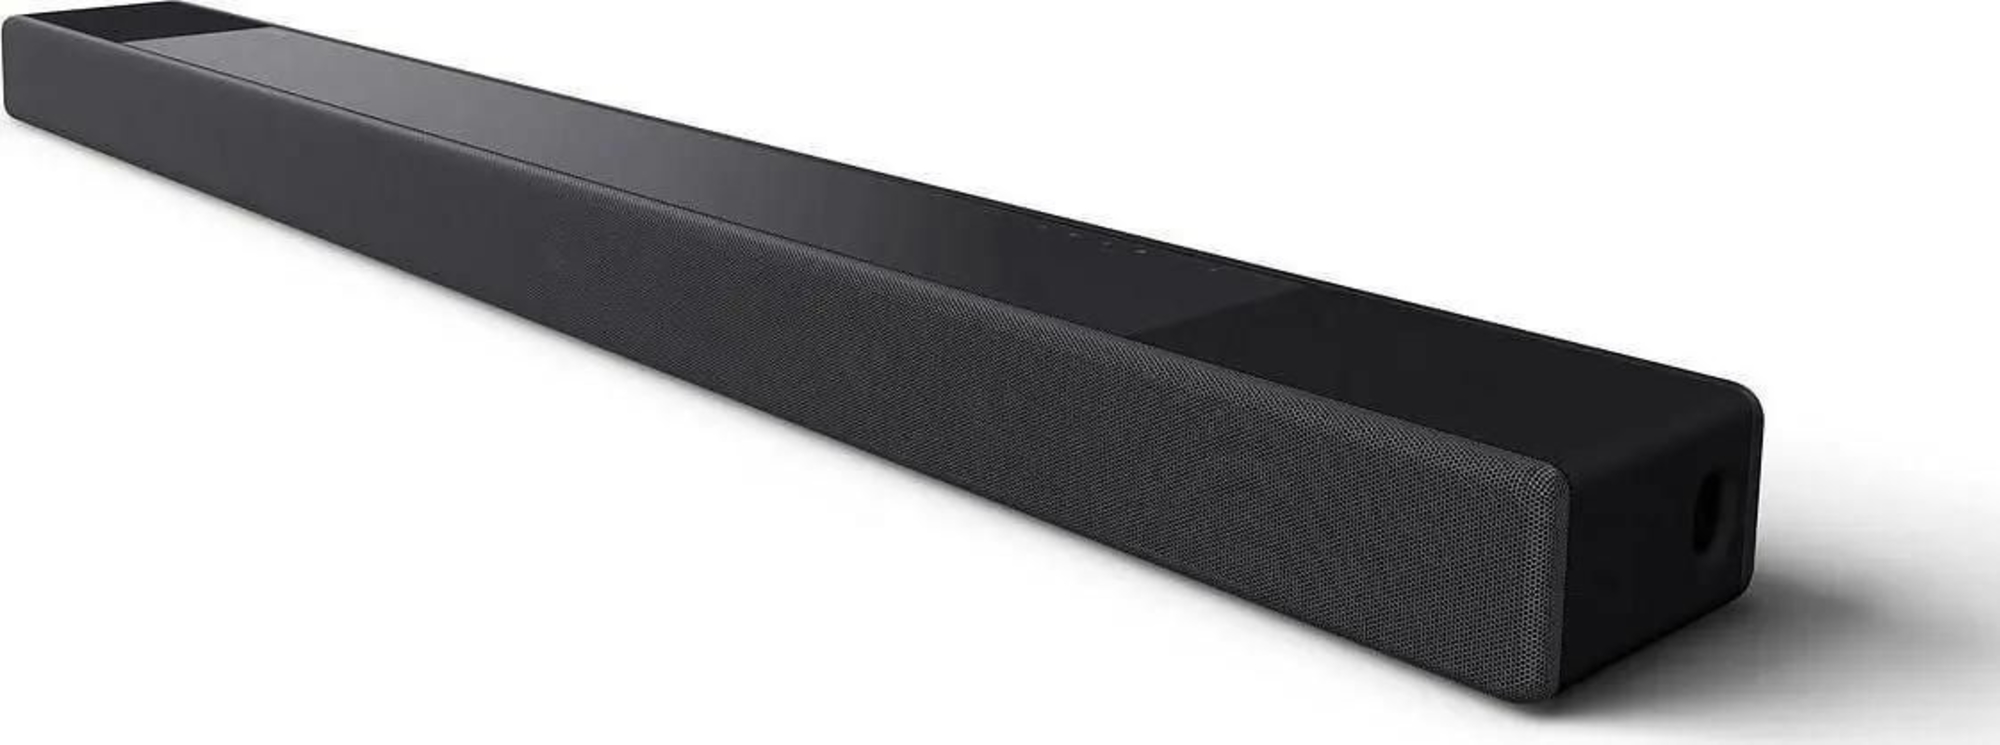 Саундбары со встроенным сабвуфером Sony HT-A3000 саундбары с внешним сабвуфером klipsch cinema 600 sound bar